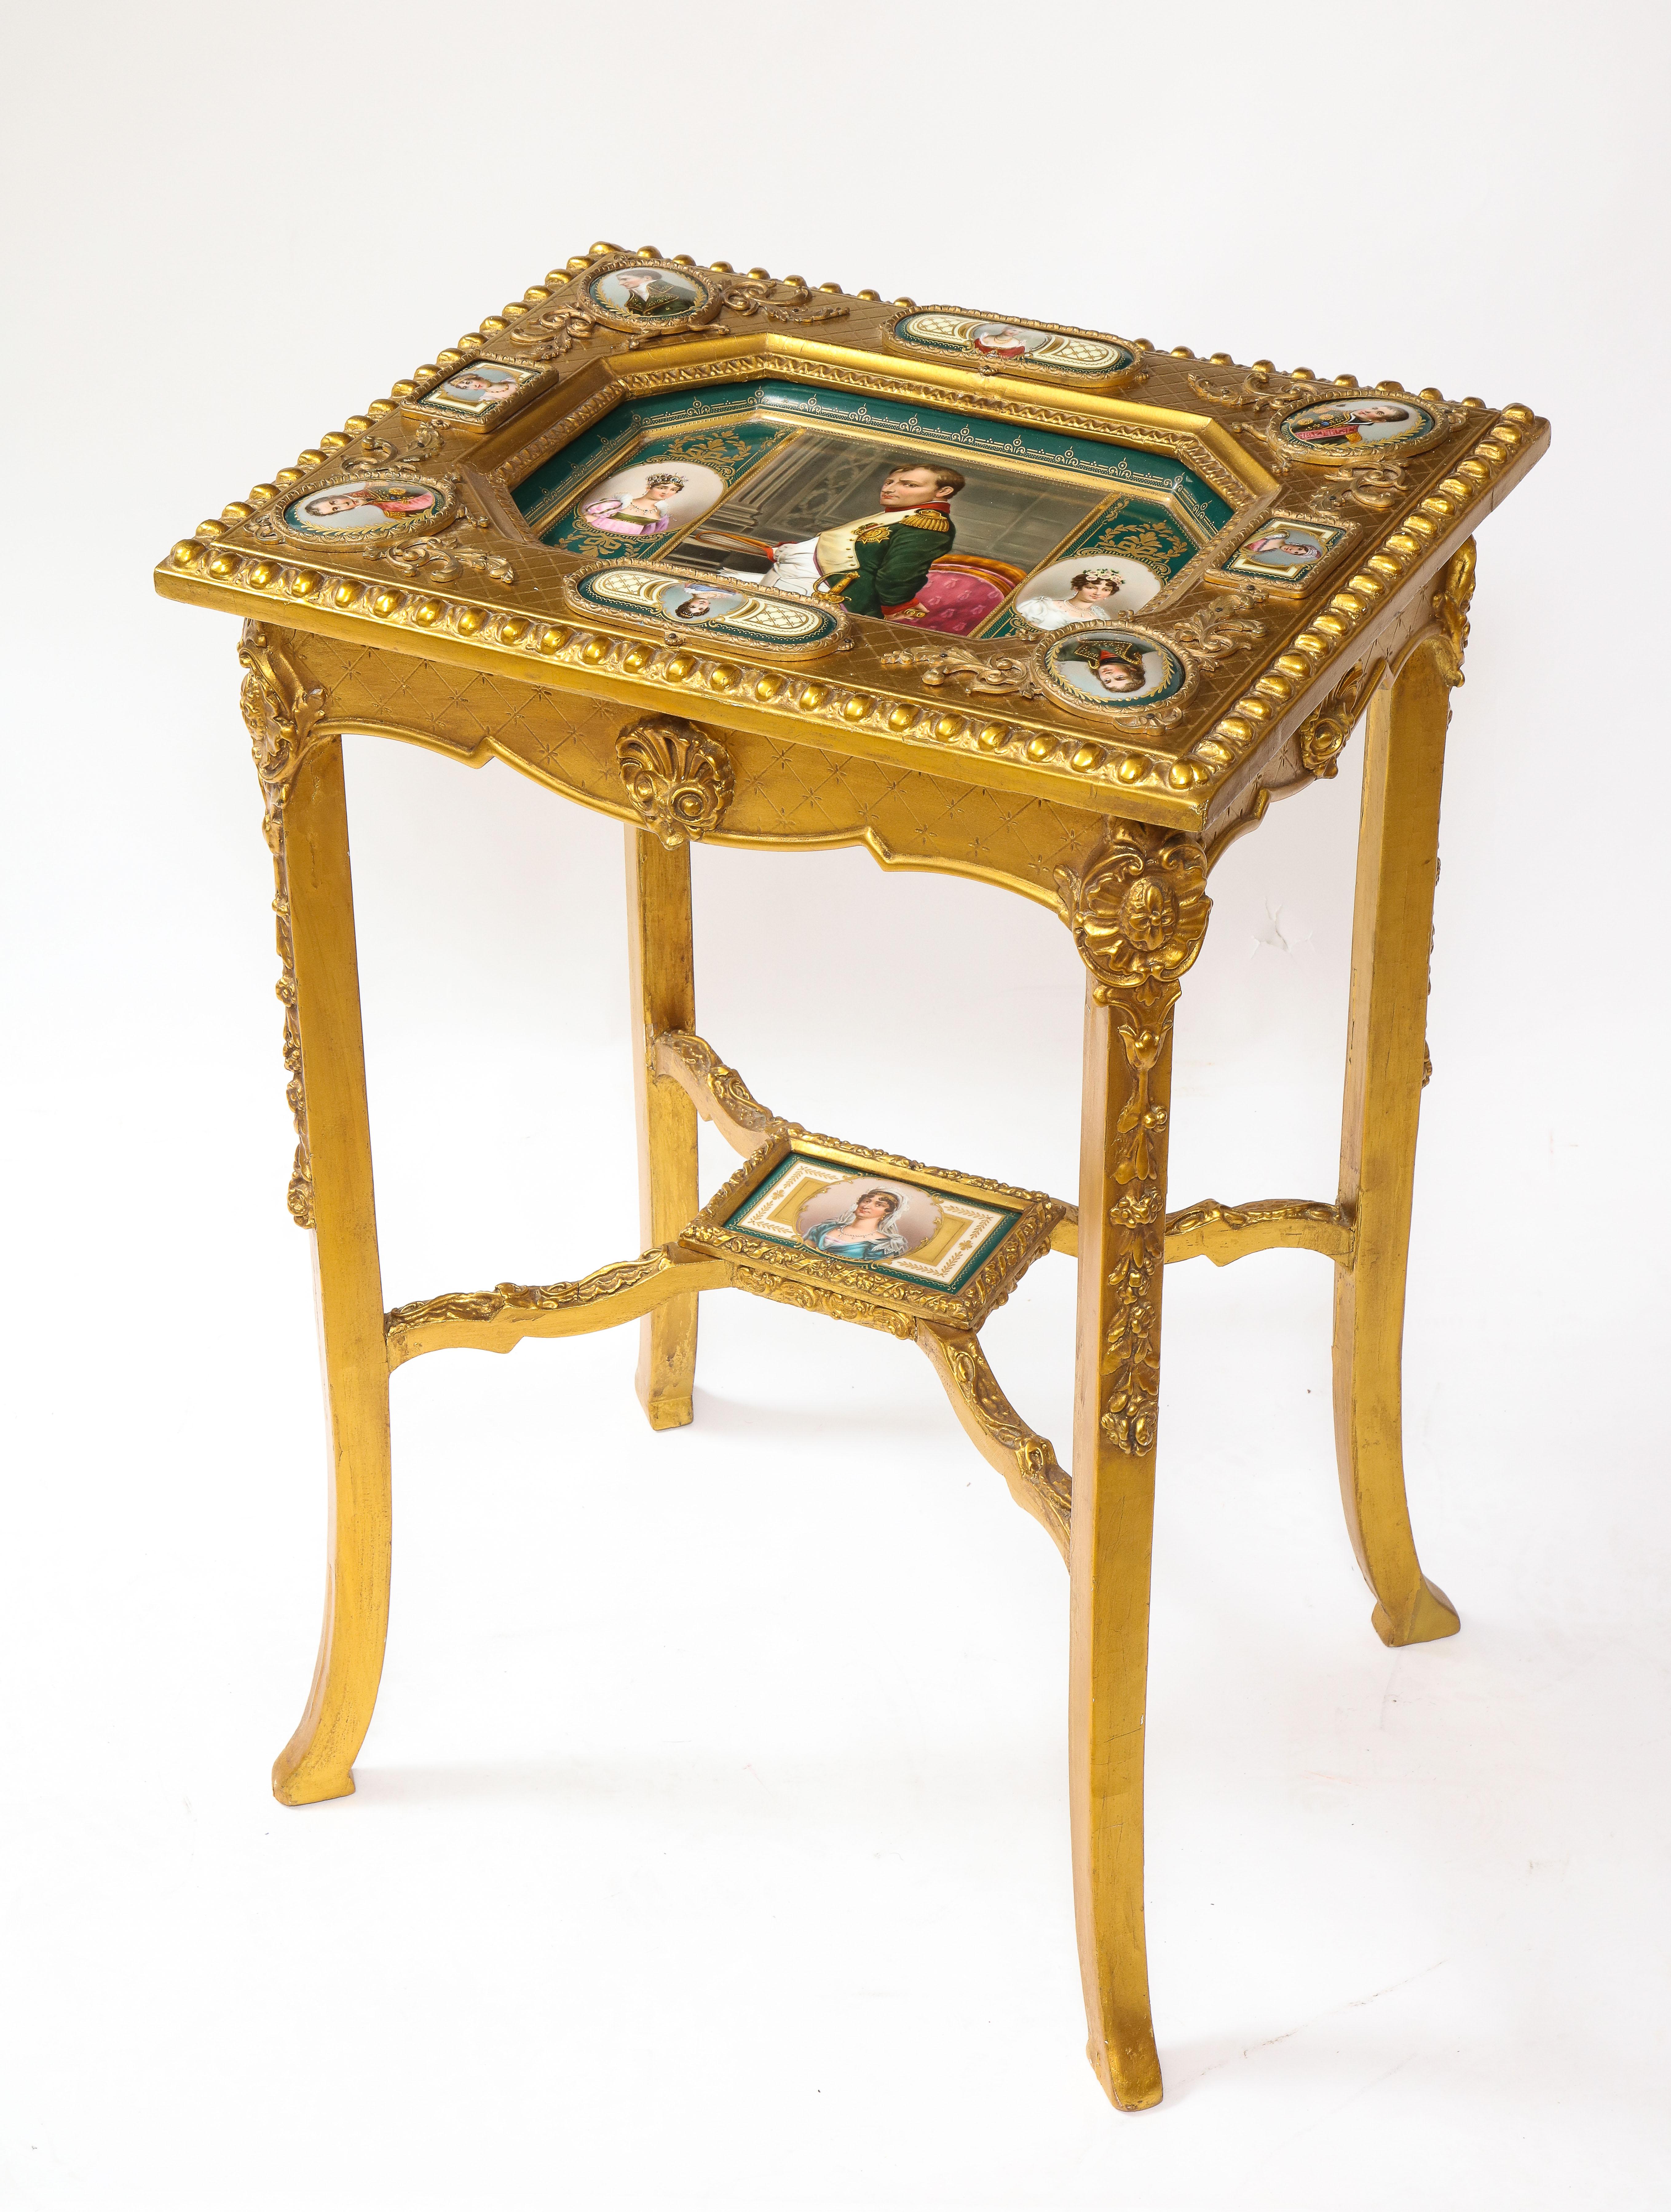 Ein fabelhafter napoleonischer Beistelltisch aus vergoldetem Holz im Louis-XVI-Stil des 19. Jahrhunderts mit handgemalten Intarsien aus königlichem Wiener Porzellan. Dieser exquisite Beistelltisch mit 24-karätigem Finish ist mit eingelegten